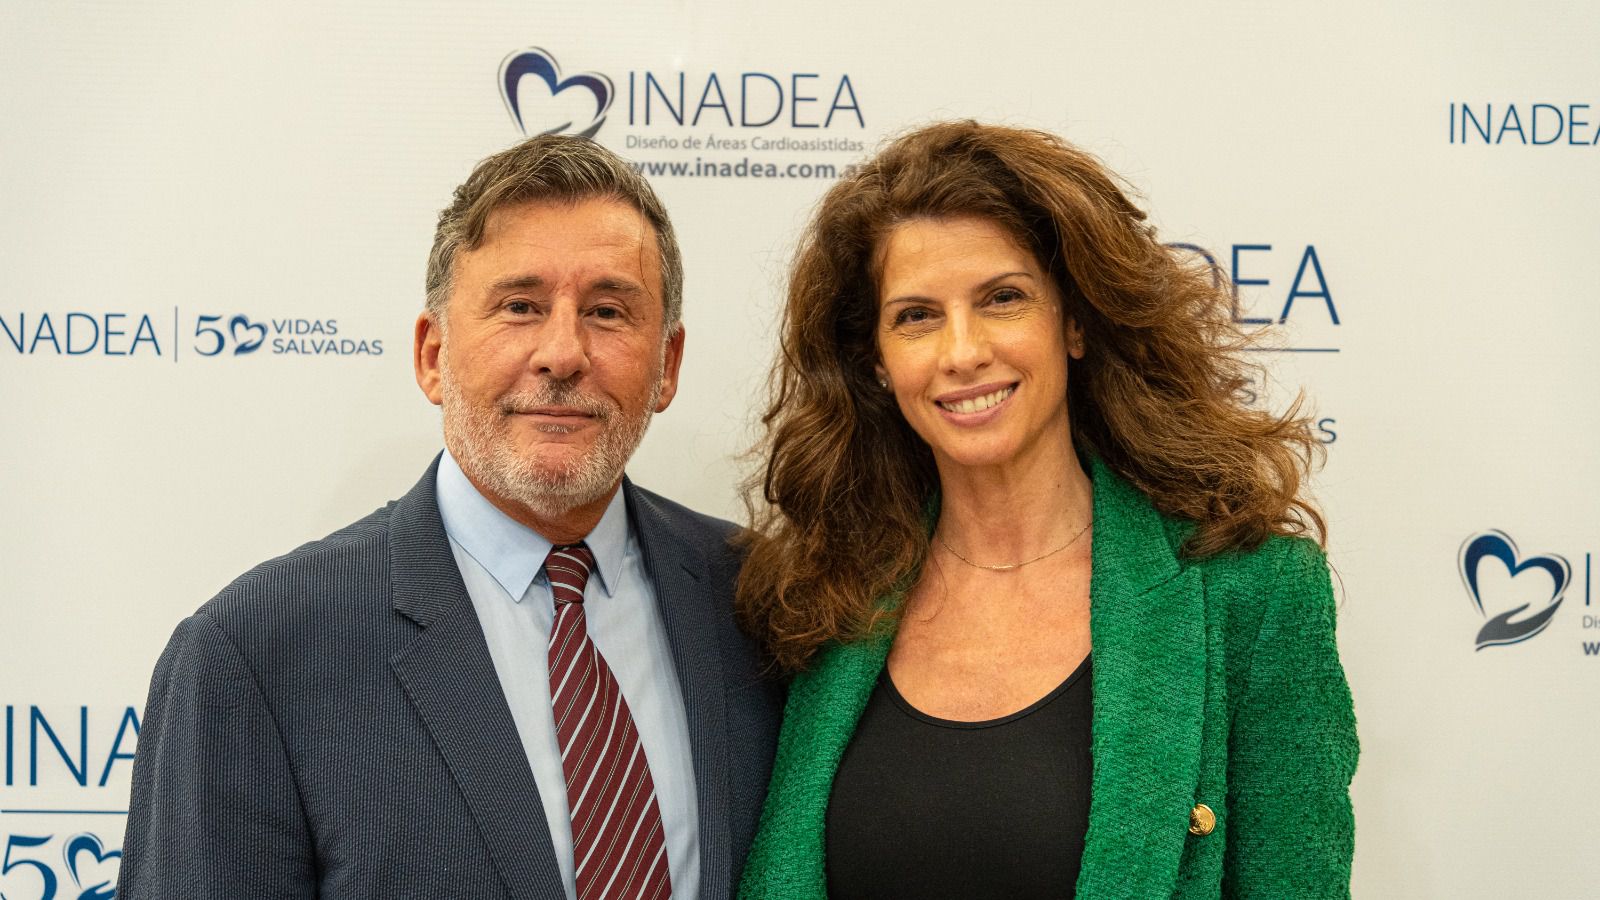 Analía Maiorana, coach ontológica y de liderazgo posa con el doctor Fitz Maurice (INADEA)